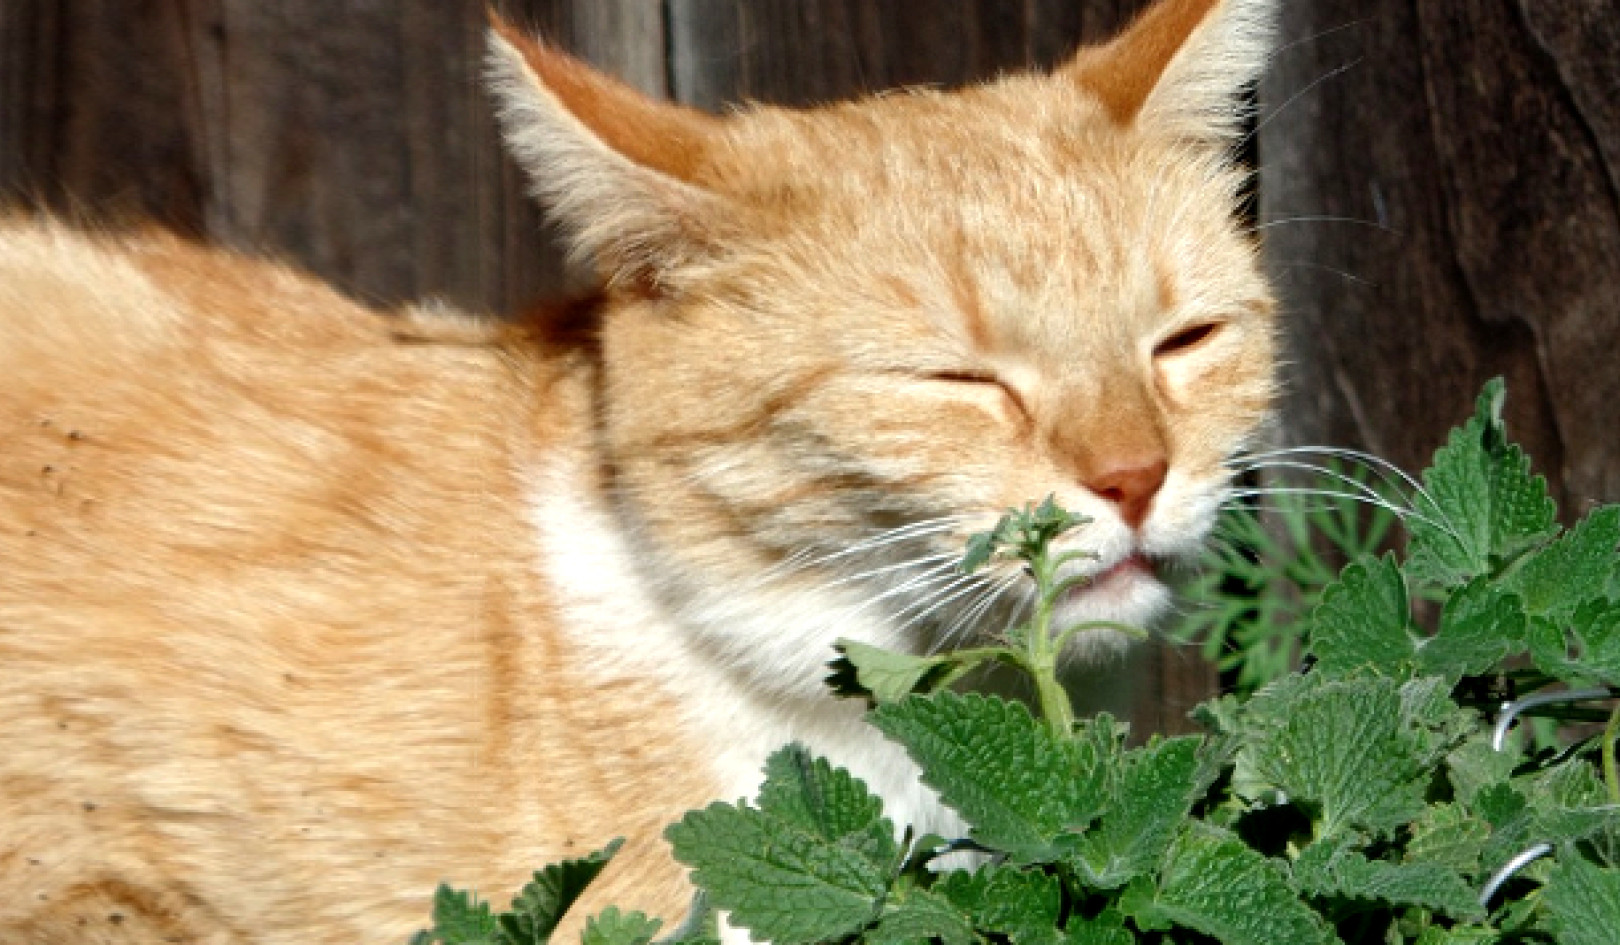 Una receta natural de repelente de insectos: incluso a tu gato le puede gustar